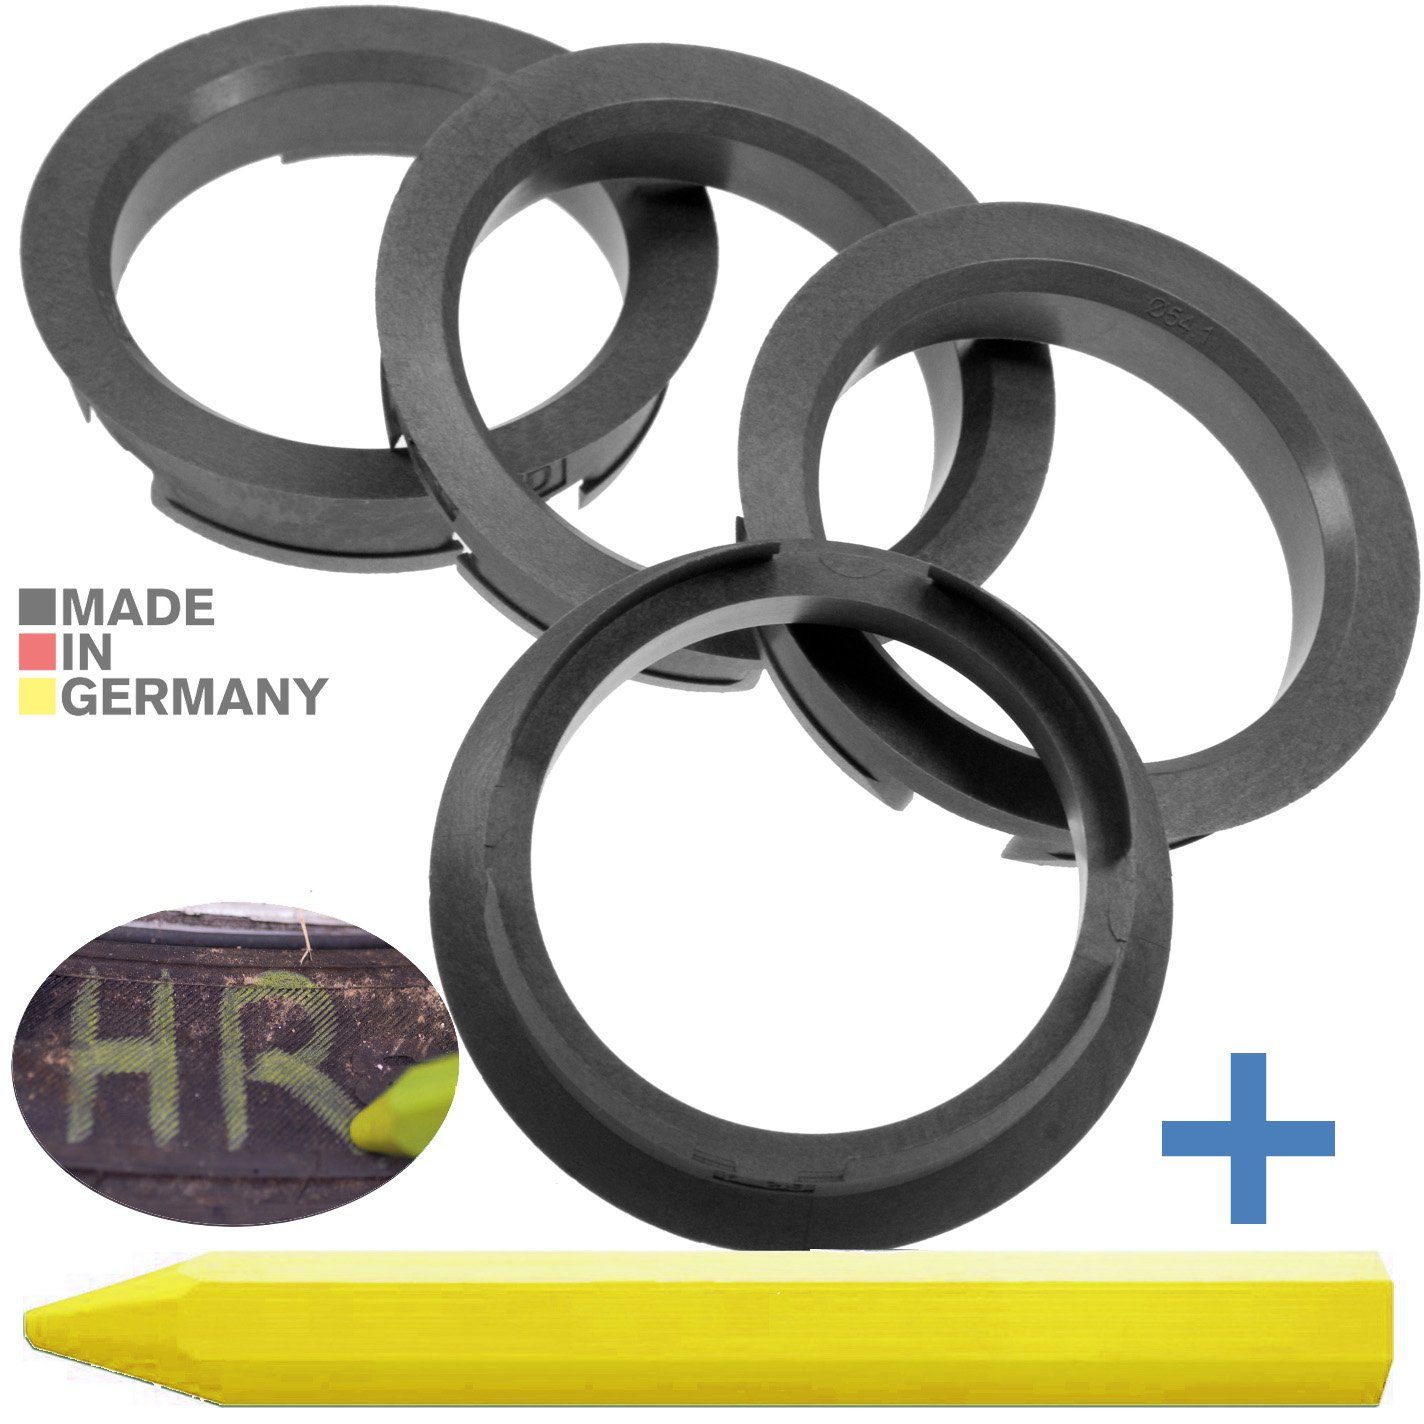 RKC Reifenstift 4X Zentrierringe Silber Felgen Ringe + 1x Reifen Kreide Fett Stift, Maße: 63,4 x 54,1 mm